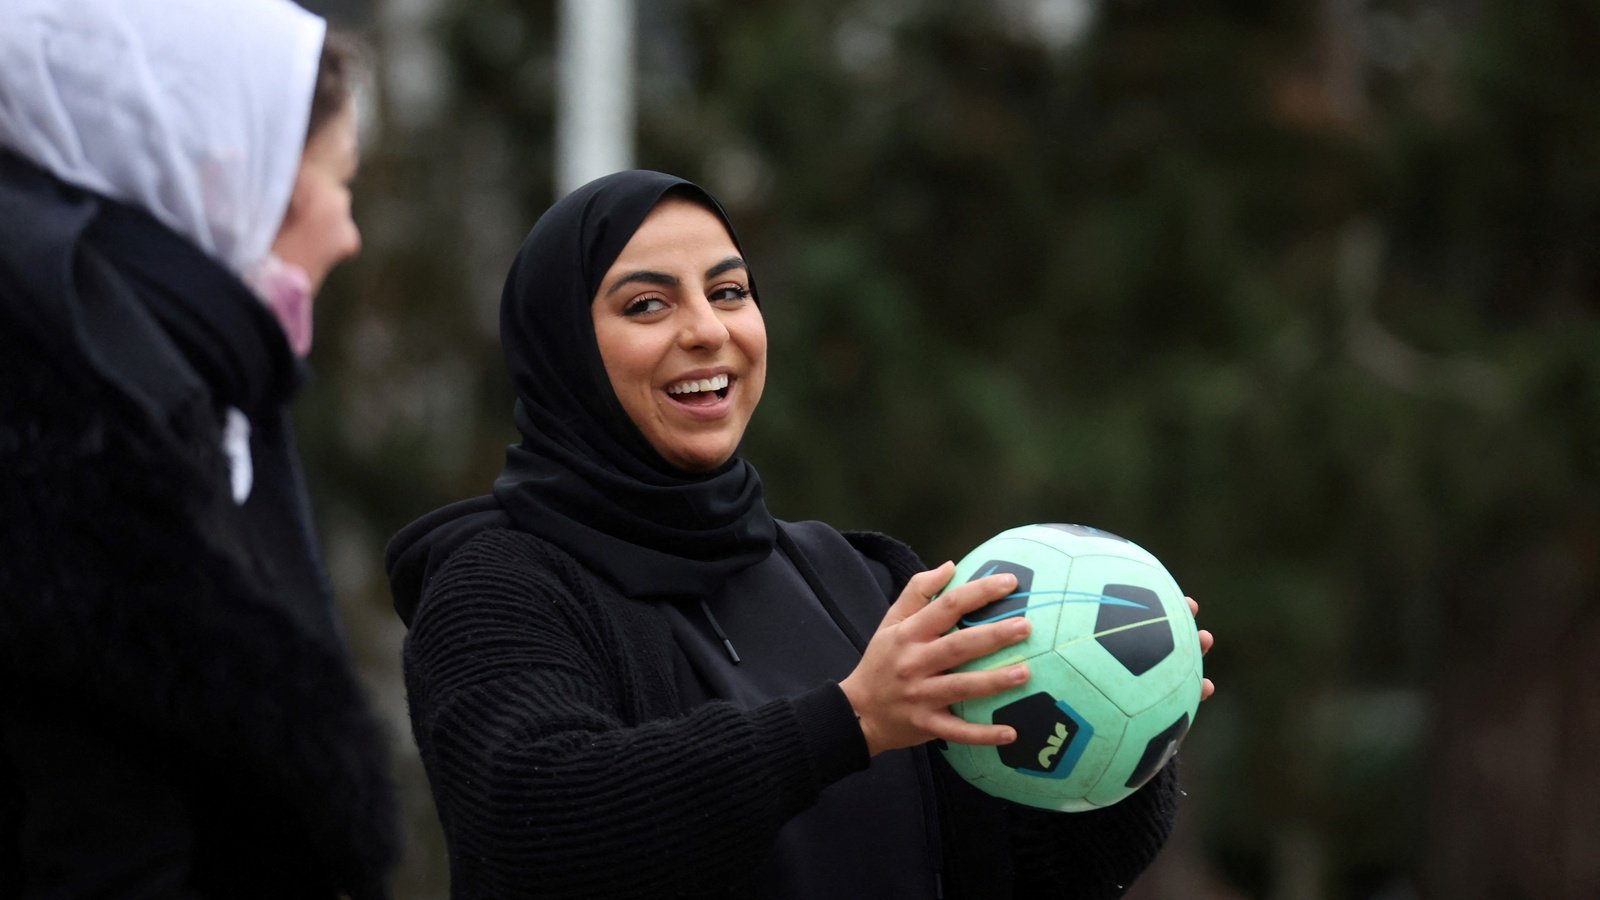 Femmes cette semaine : les athlètes françaises interdites de porter le hijab pour les JO 2024